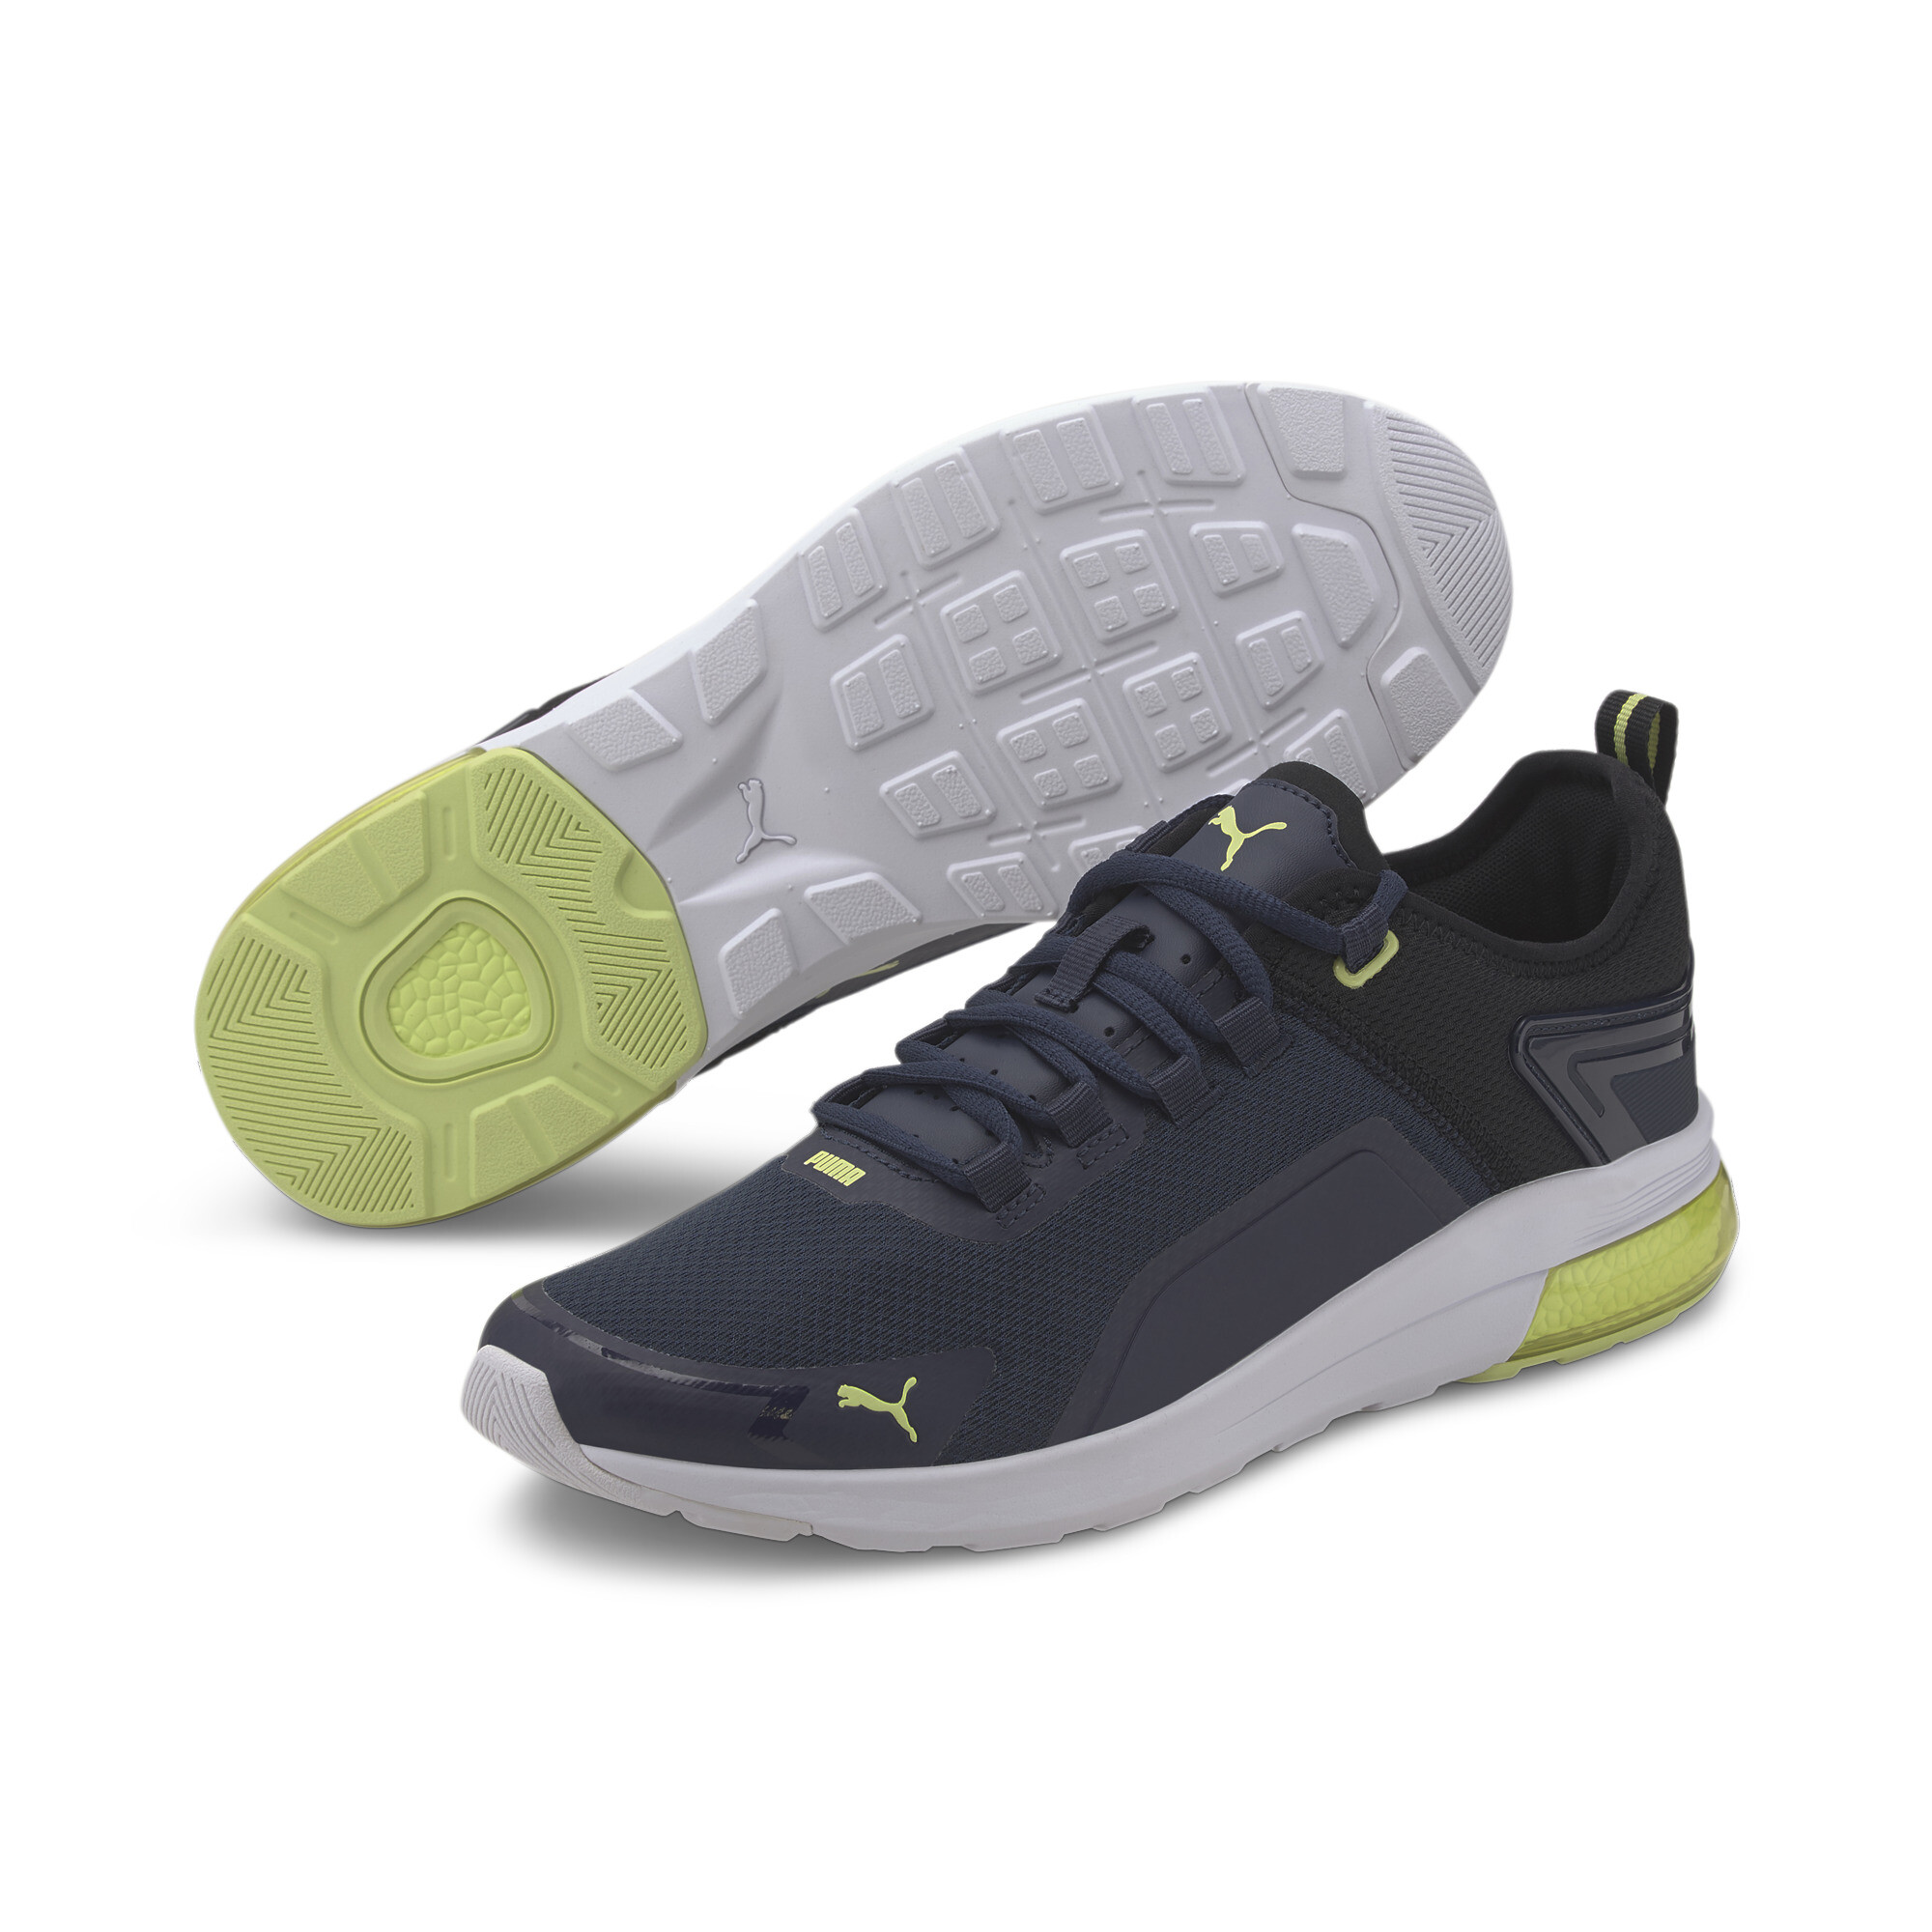 Indexbild 14 - PUMA Electron Street Era Sneaker Unisex Schuhe Basics Neu